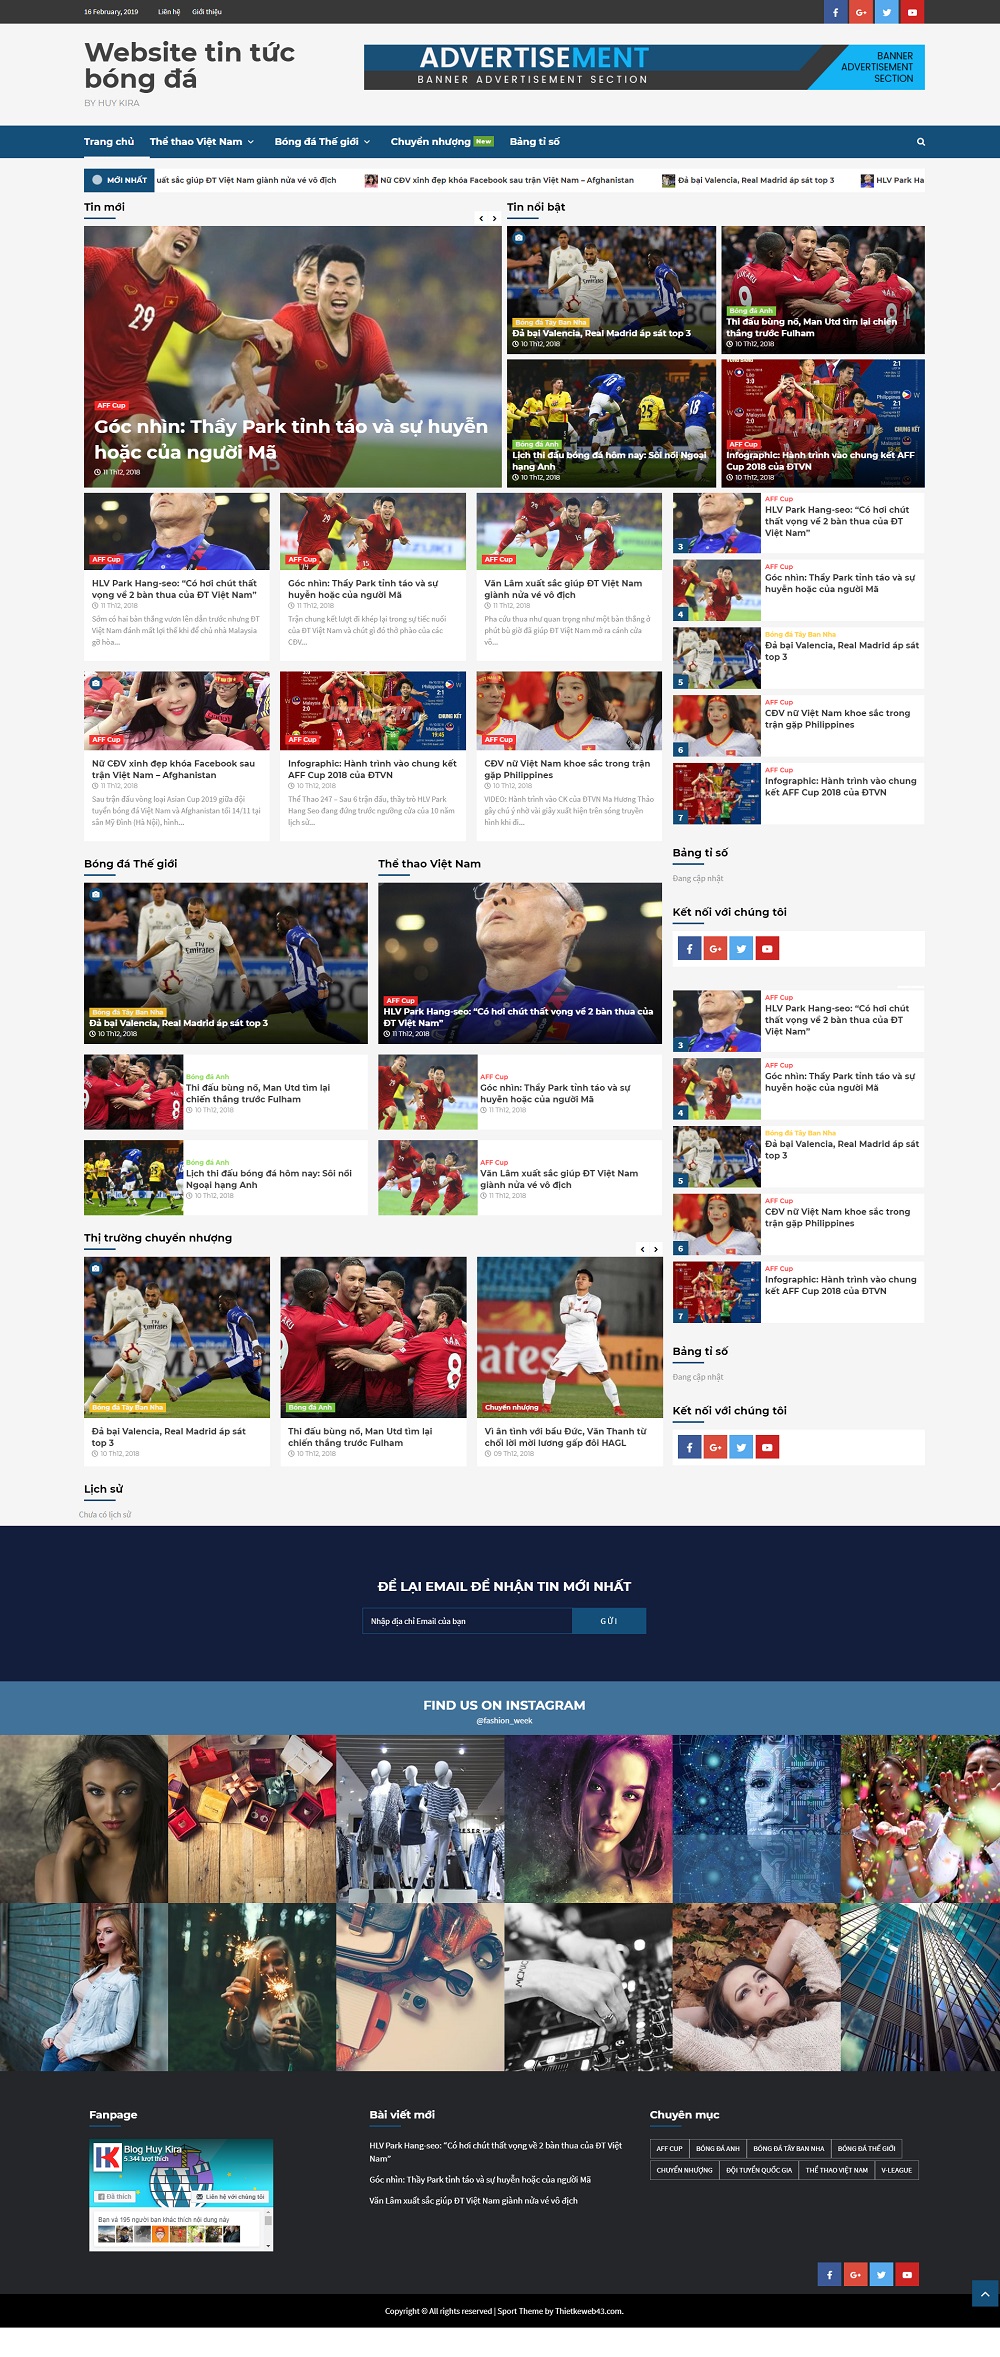 Share full code tin tức bóng đá sử dụng wordpress